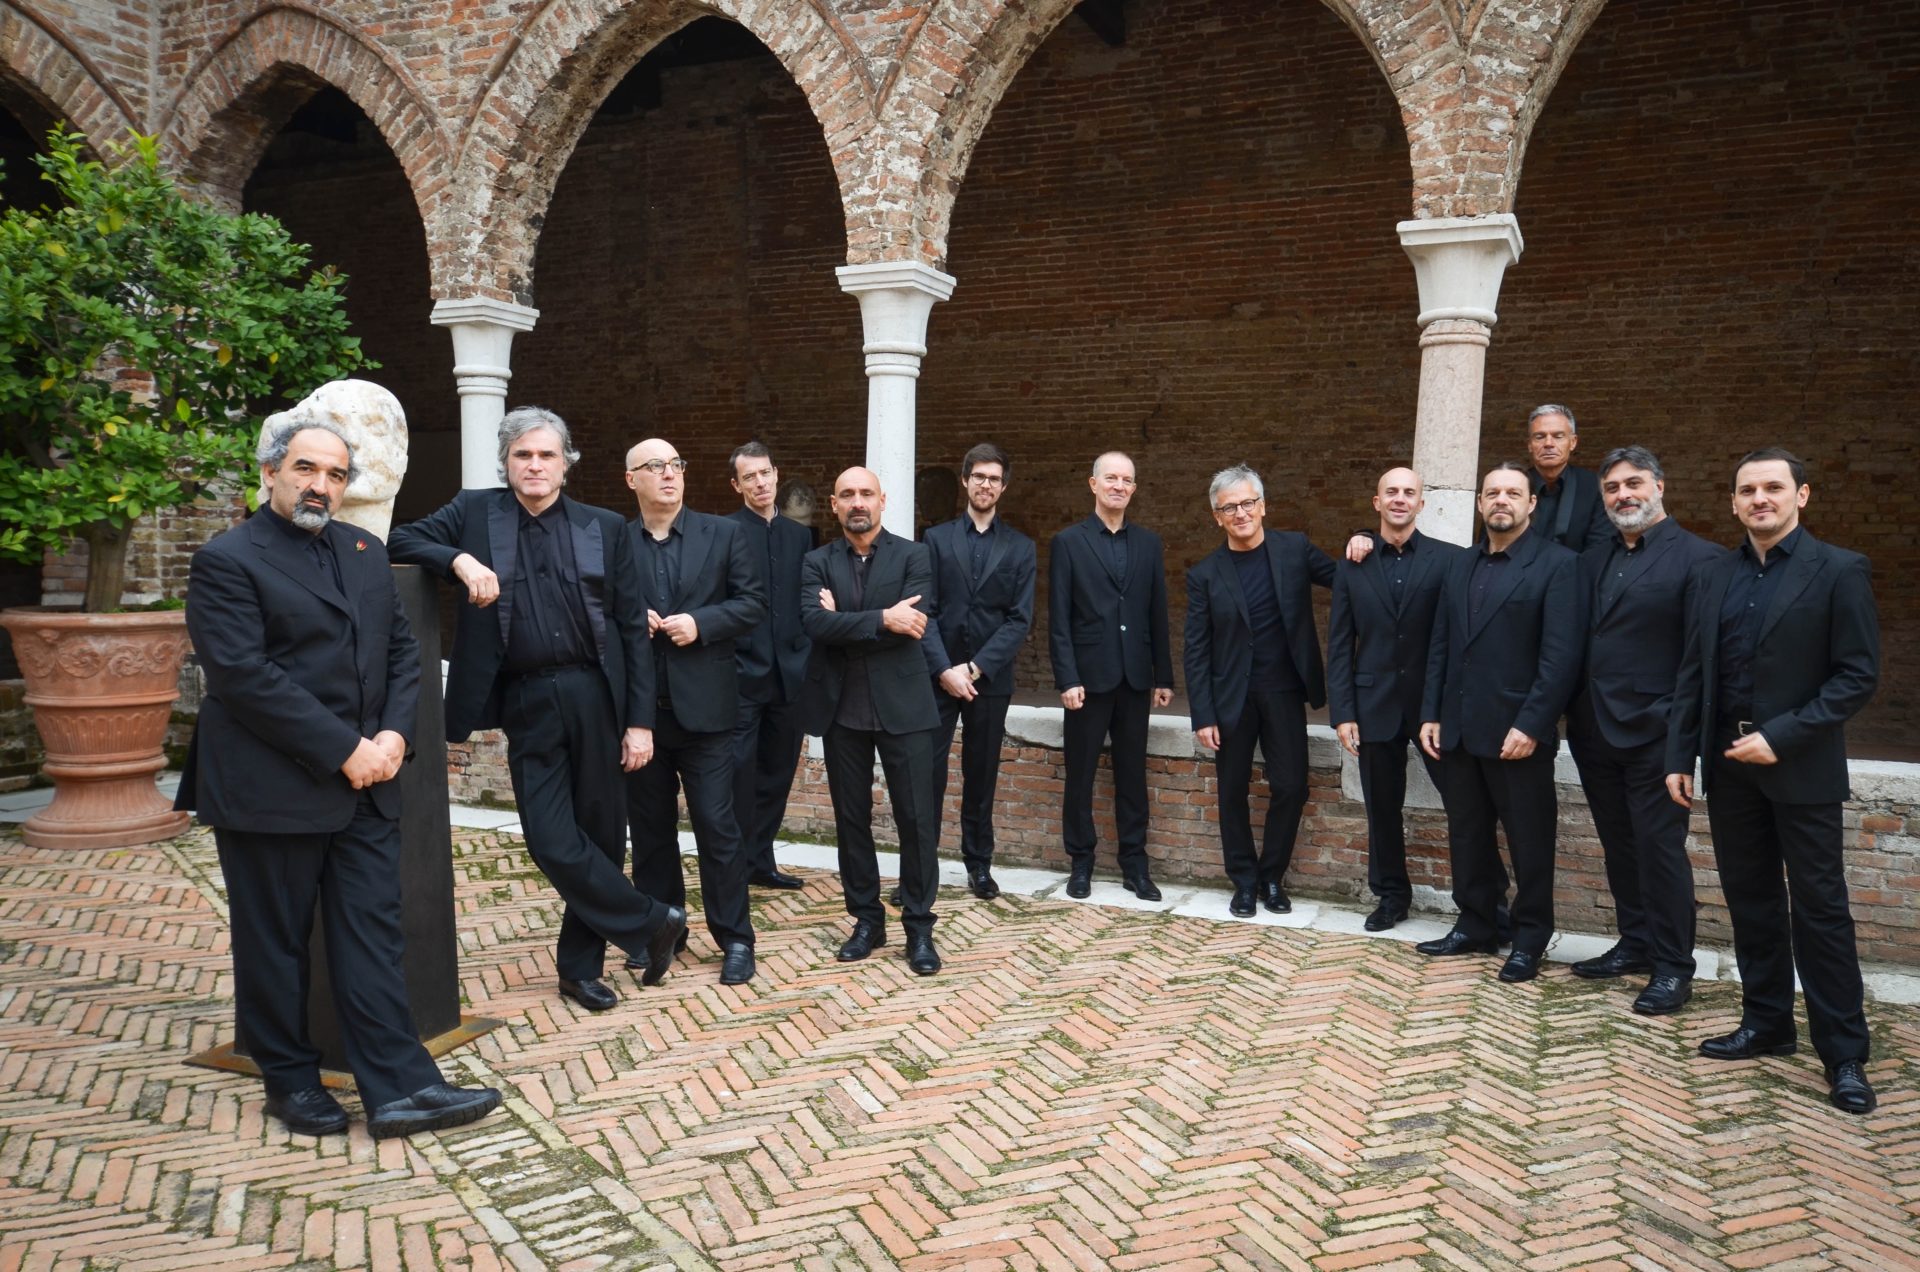 L'Associazione Scarlatti celebra i 100 anni con un concerto nella basilica di San Paolo Maggiore